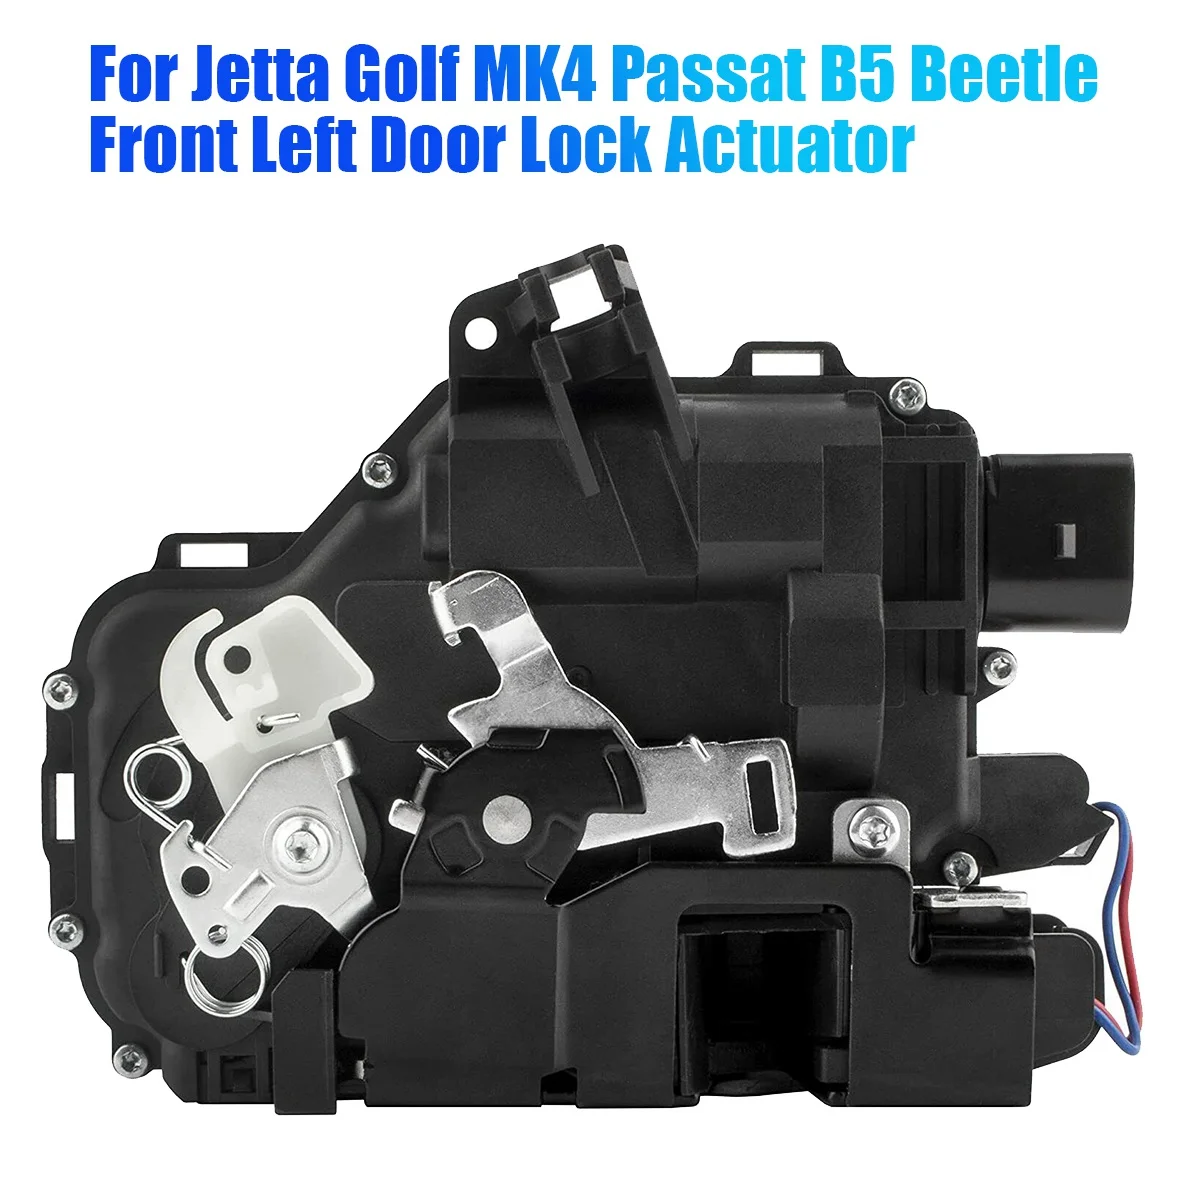 

Новый передний левый дверной замок для VW Jetta Golf MK4 Passat B5 Beetle 3B1837015A